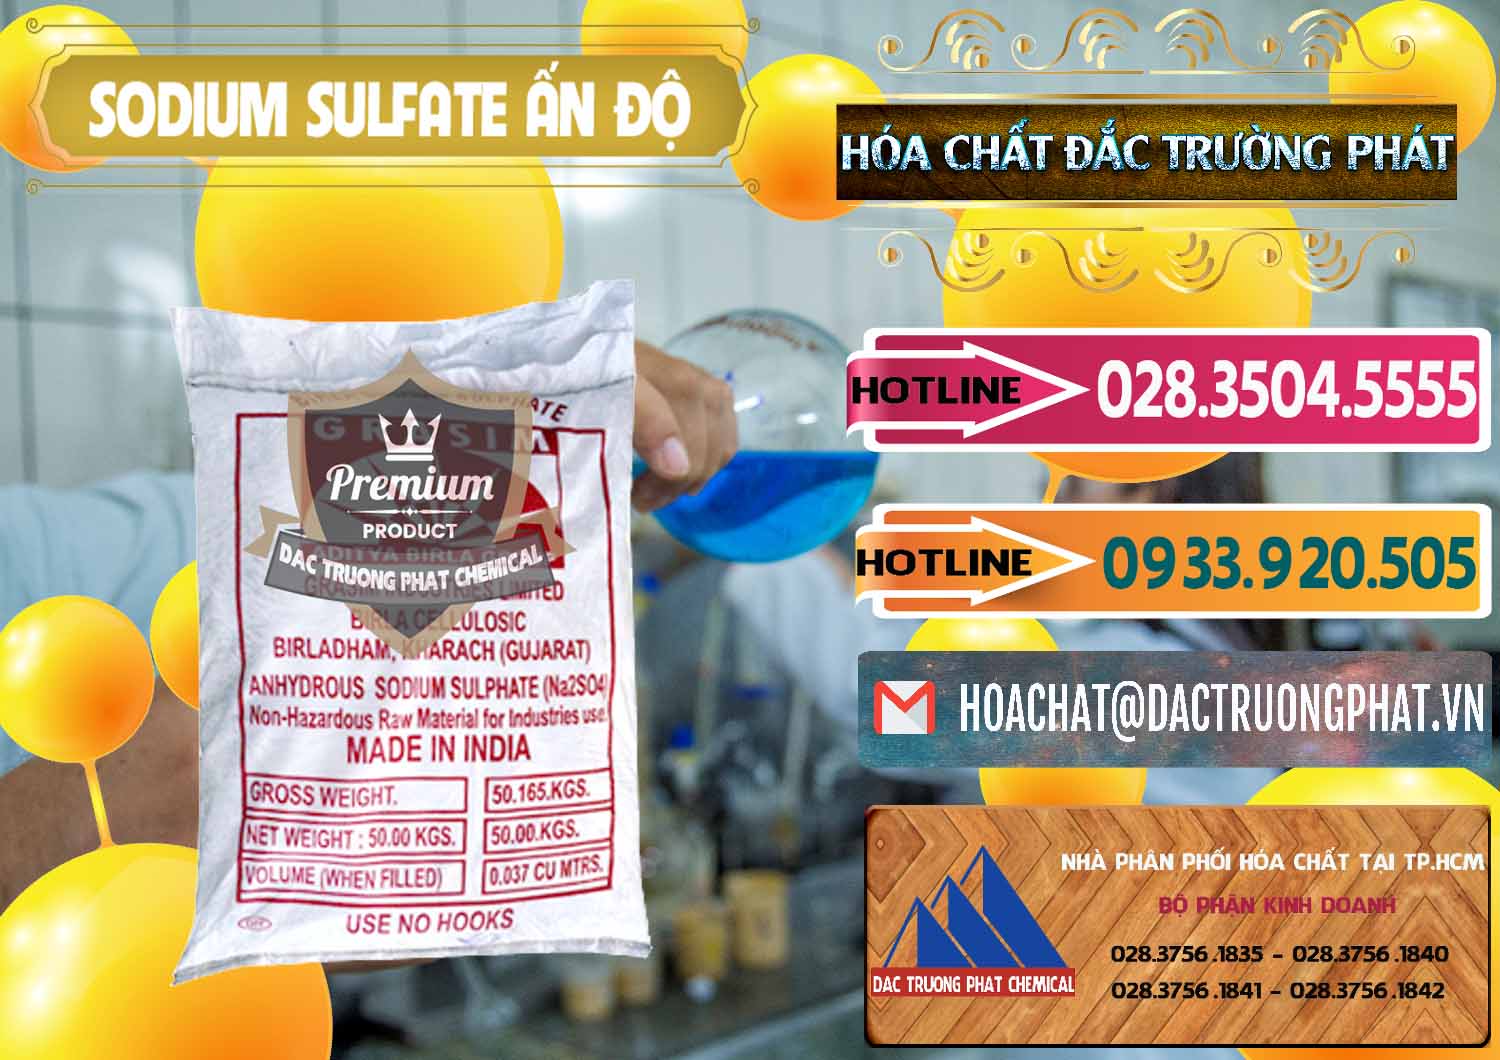 Cty phân phối - bán Sodium Sulphate - Muối Sunfat Na2SO4 Aditya Birla Grasim Ấn Độ India - 0462 - Công ty chuyên bán và phân phối hóa chất tại TP.HCM - dactruongphat.vn